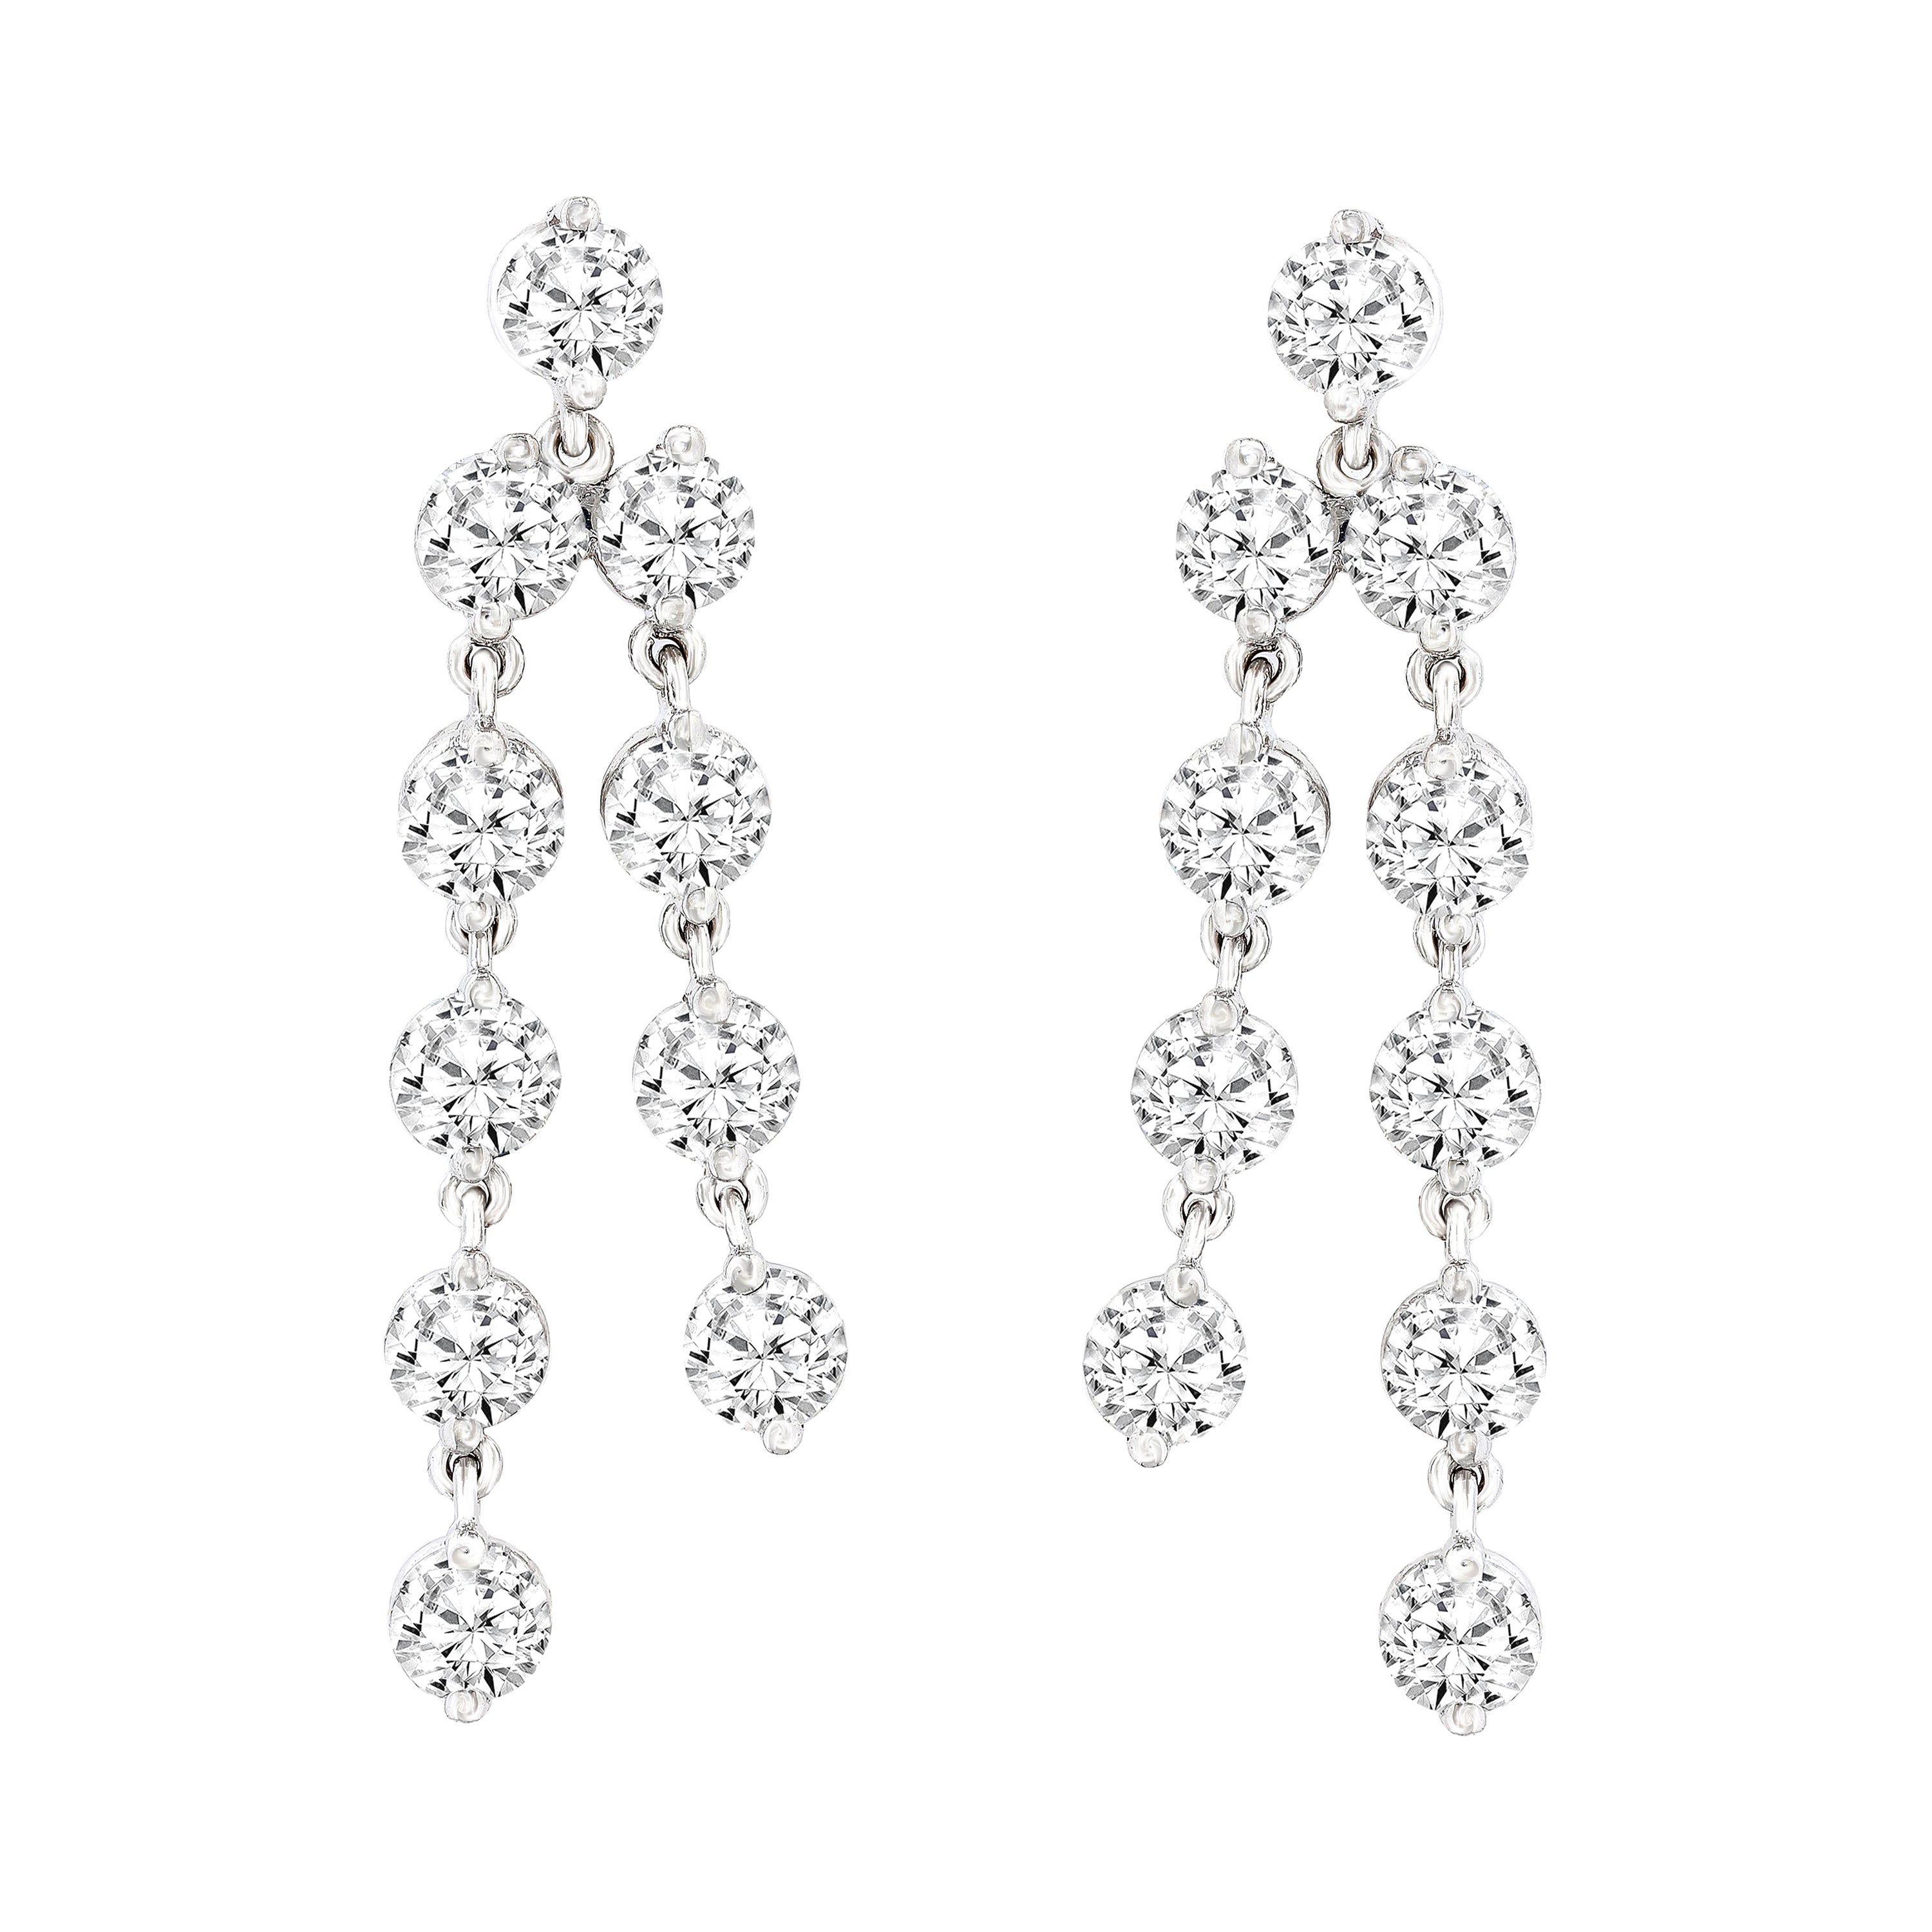 5.01 Carat Diamond Chandelier Earrings in 14k White Gold